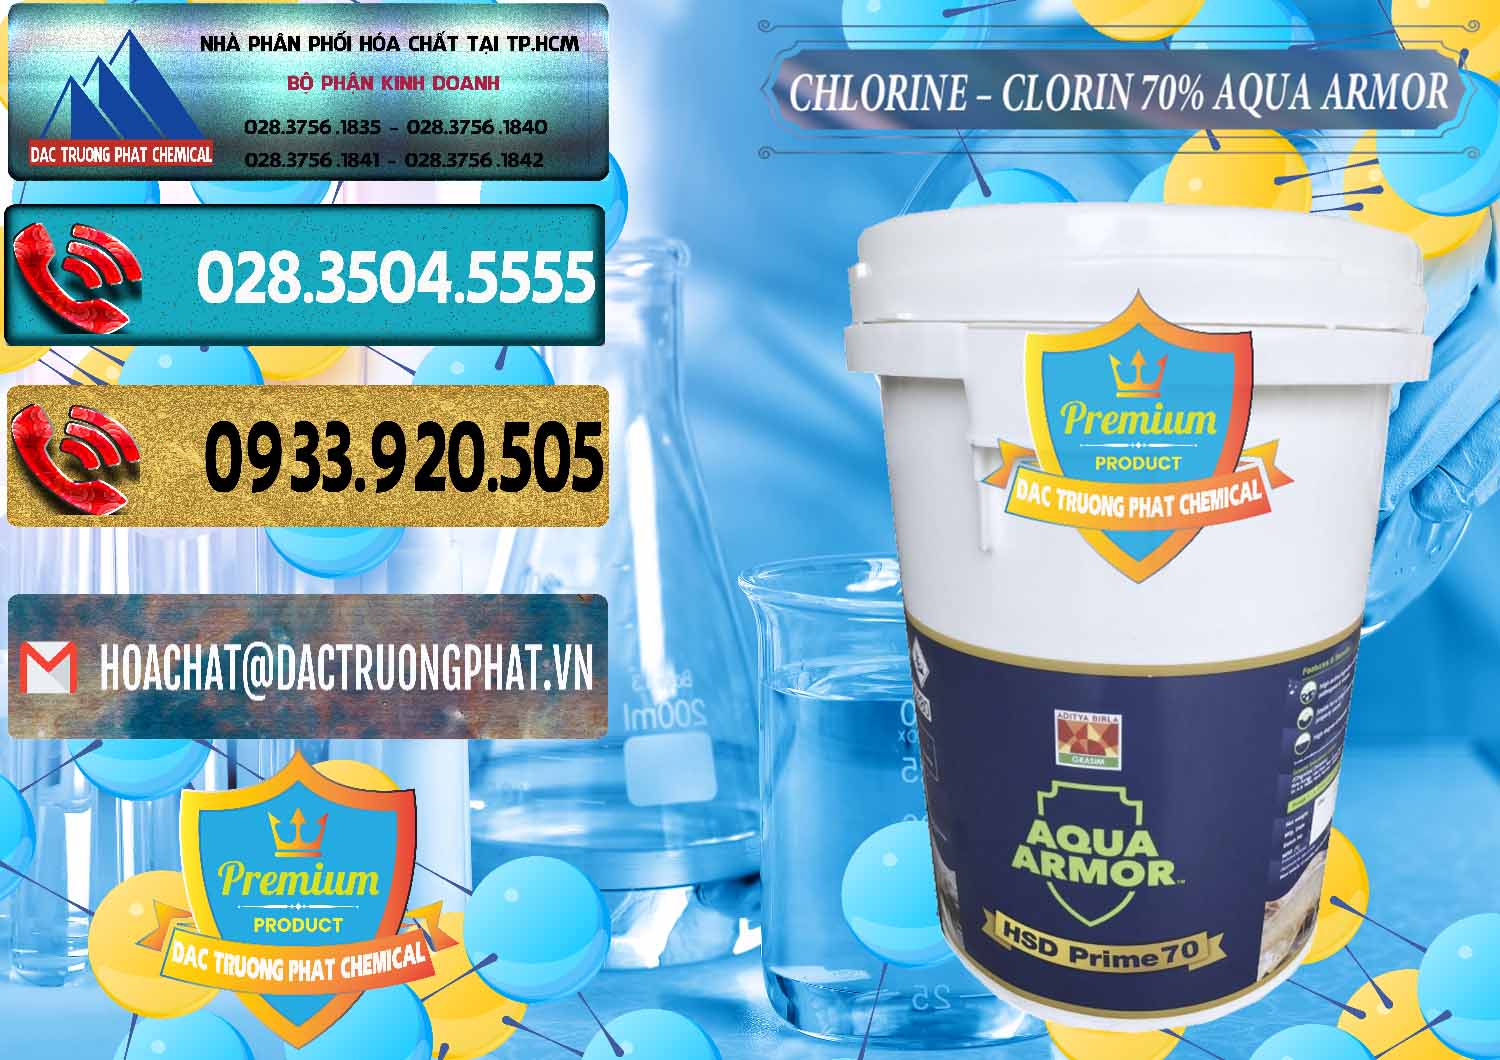 Đơn vị chuyên nhập khẩu _ bán Chlorine – Clorin 70% Aqua Armor Aditya Birla Grasim Ấn Độ India - 0241 - Cty chuyên cung cấp _ nhập khẩu hóa chất tại TP.HCM - hoachatdetnhuom.com